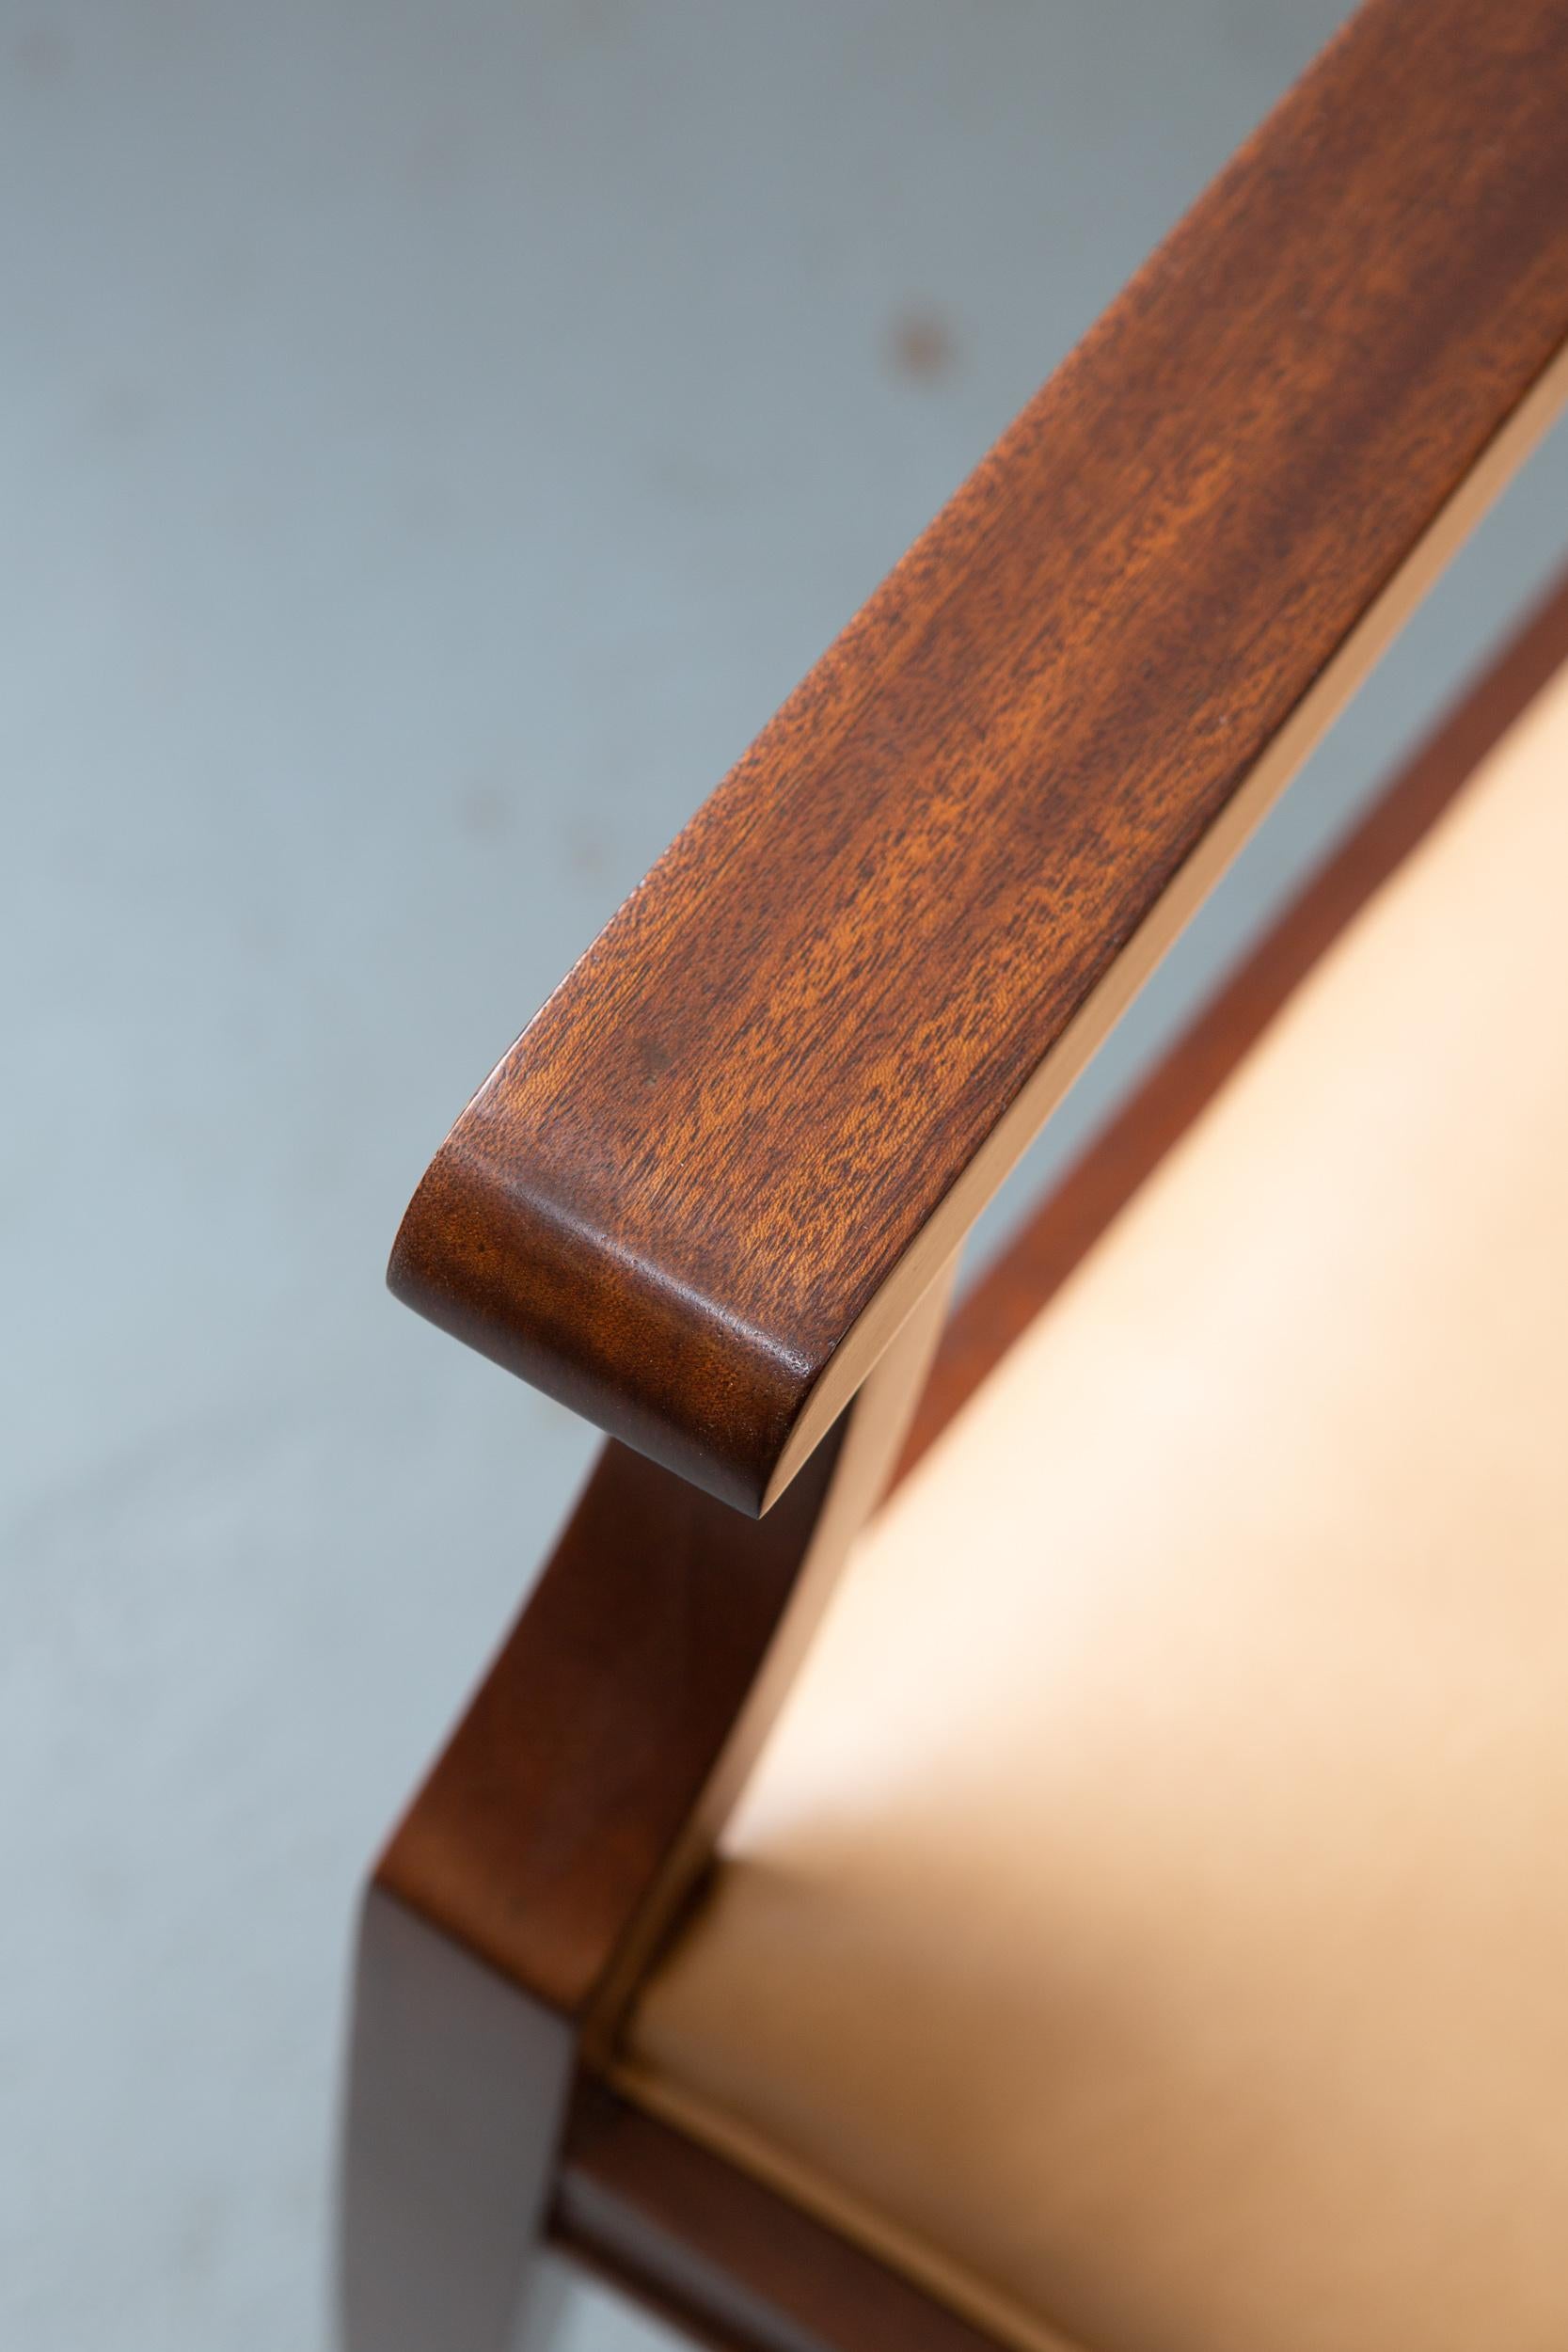 Stattlicher, struktureller Mahagoni-Sessel nach einem Original aus den 1940er Jahren. Sehr robust und hübsch mit klaren Linien. Leicht konisch zulaufende Beine und hellbraunes Leder runden den Stuhl wunderbar ab.